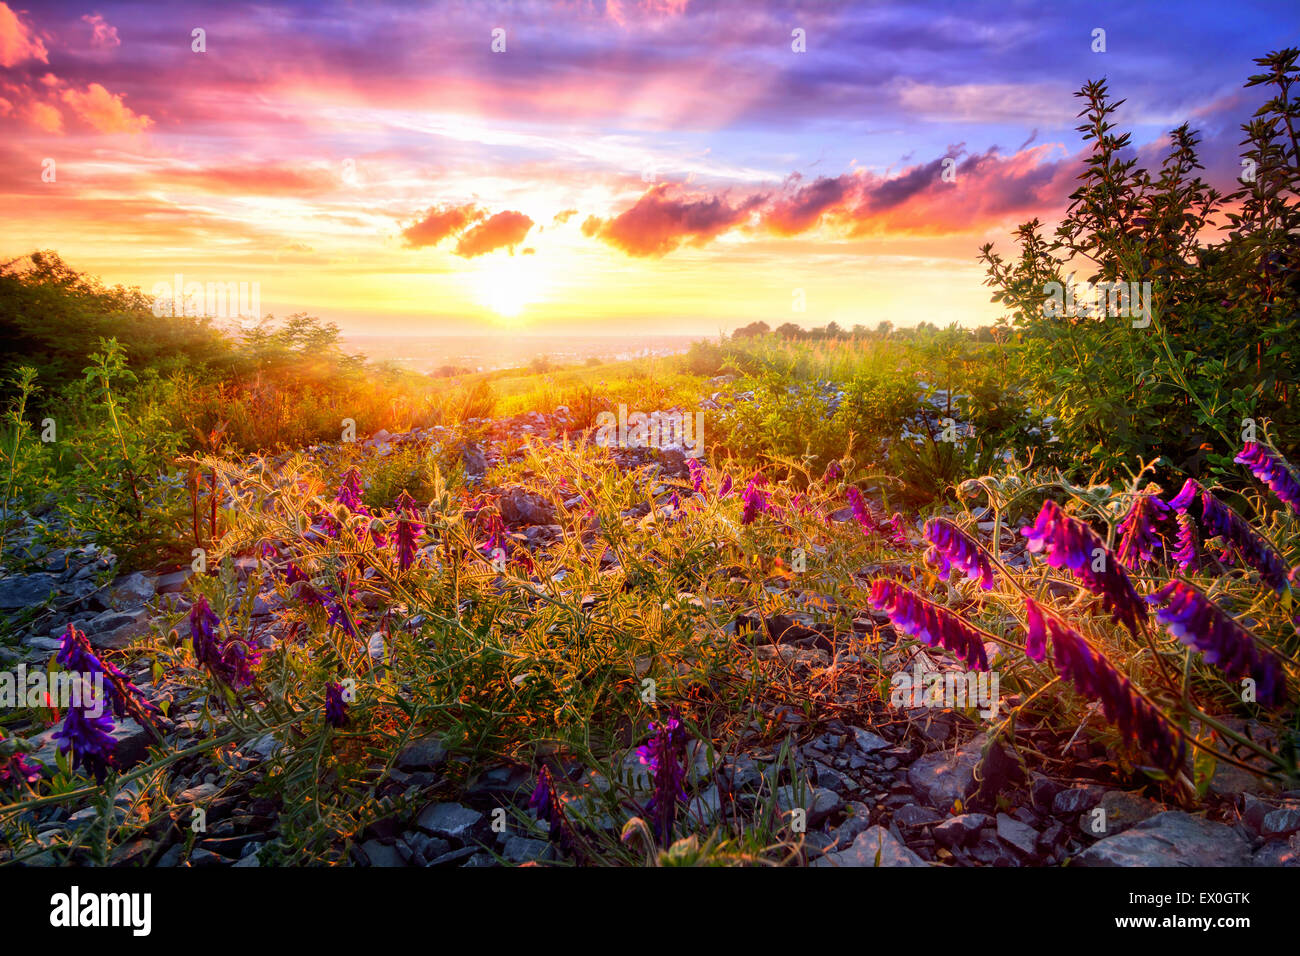 Tramonto panoramico paesaggio con vegetazione mista nella luce calda del sole e il cielo colorato in background Foto Stock